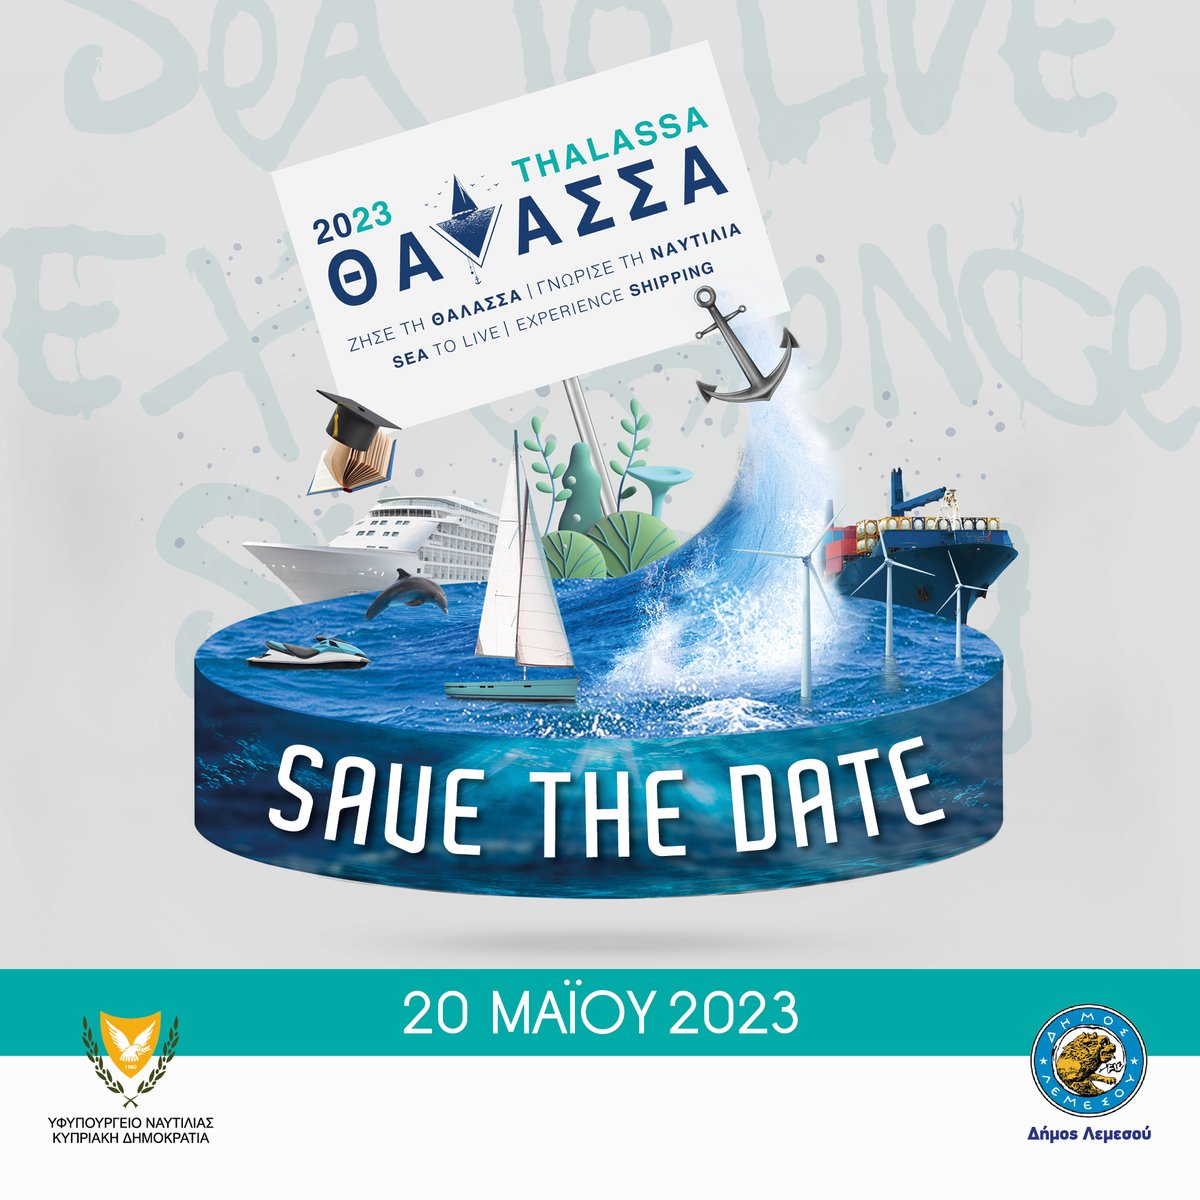 Το ΥΦΥΝ μαζί με τον @DemosLemesou με ιδιαίτερη χαρά ανακοινώνουν την 3η διοργάνωση του Φεστιβάλ #ΘΑΛΑΣΣΑ2023.Μια ολοήμερη εμπειρία αφιερωμένη στη θάλασσα, με στόχο την ενημέρωση του κοινού κ κυρίως των νέων, για την προσφορά της Θάλασσας και της Γαλάζιας Οικονομίας. #SaveTheDate